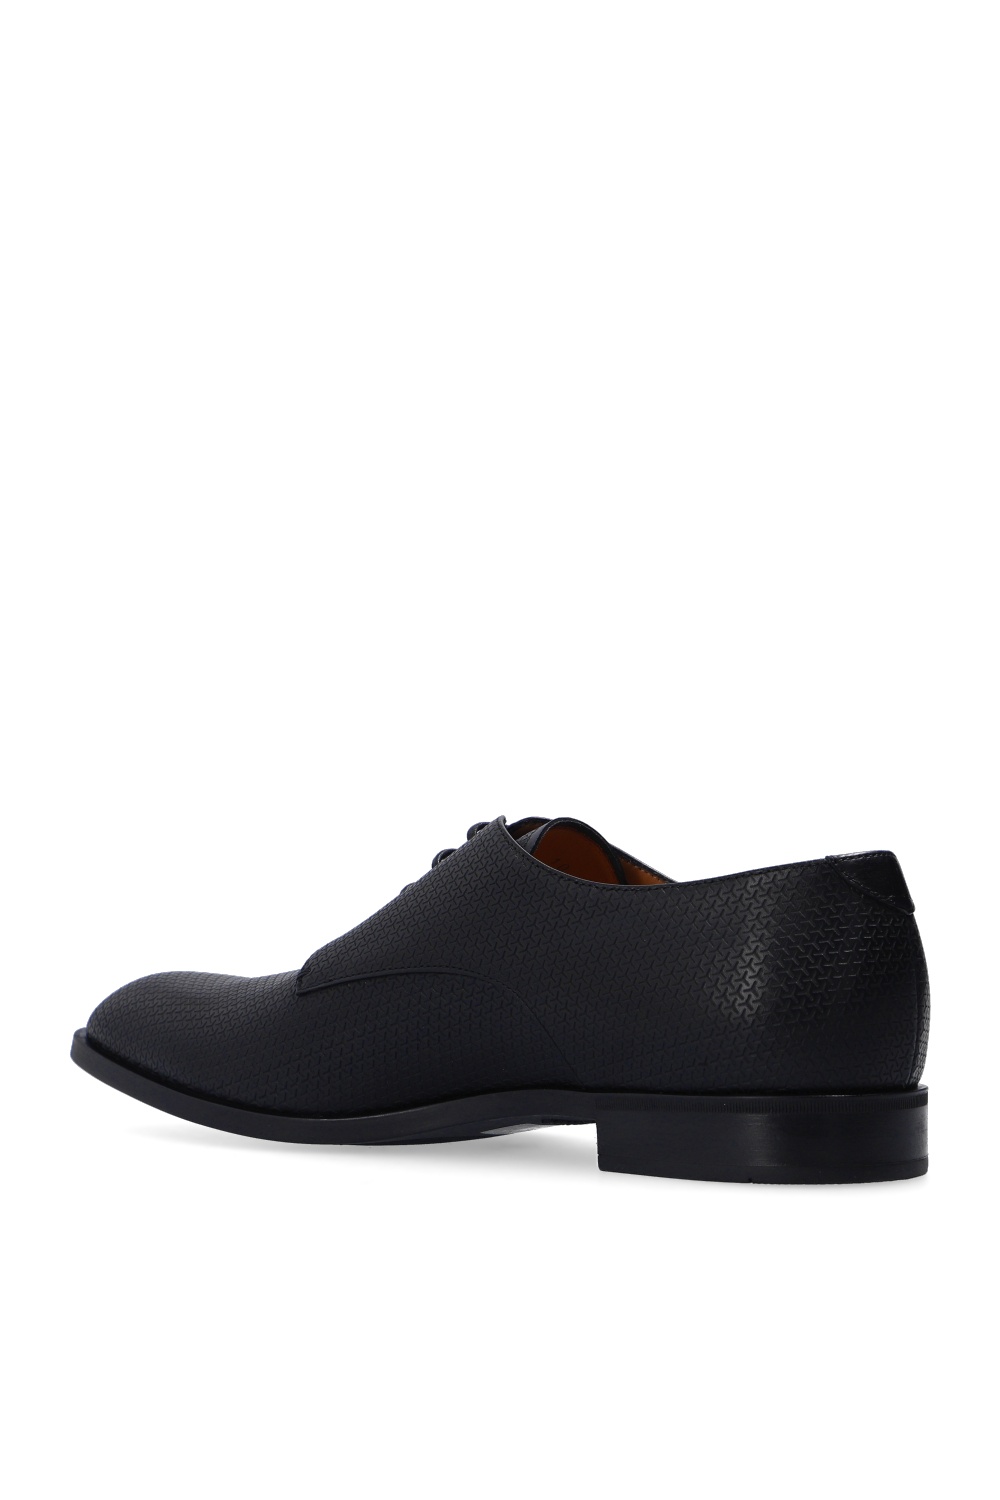 Emporio Armani Leather shoes | Men's Shoes | Vitkac